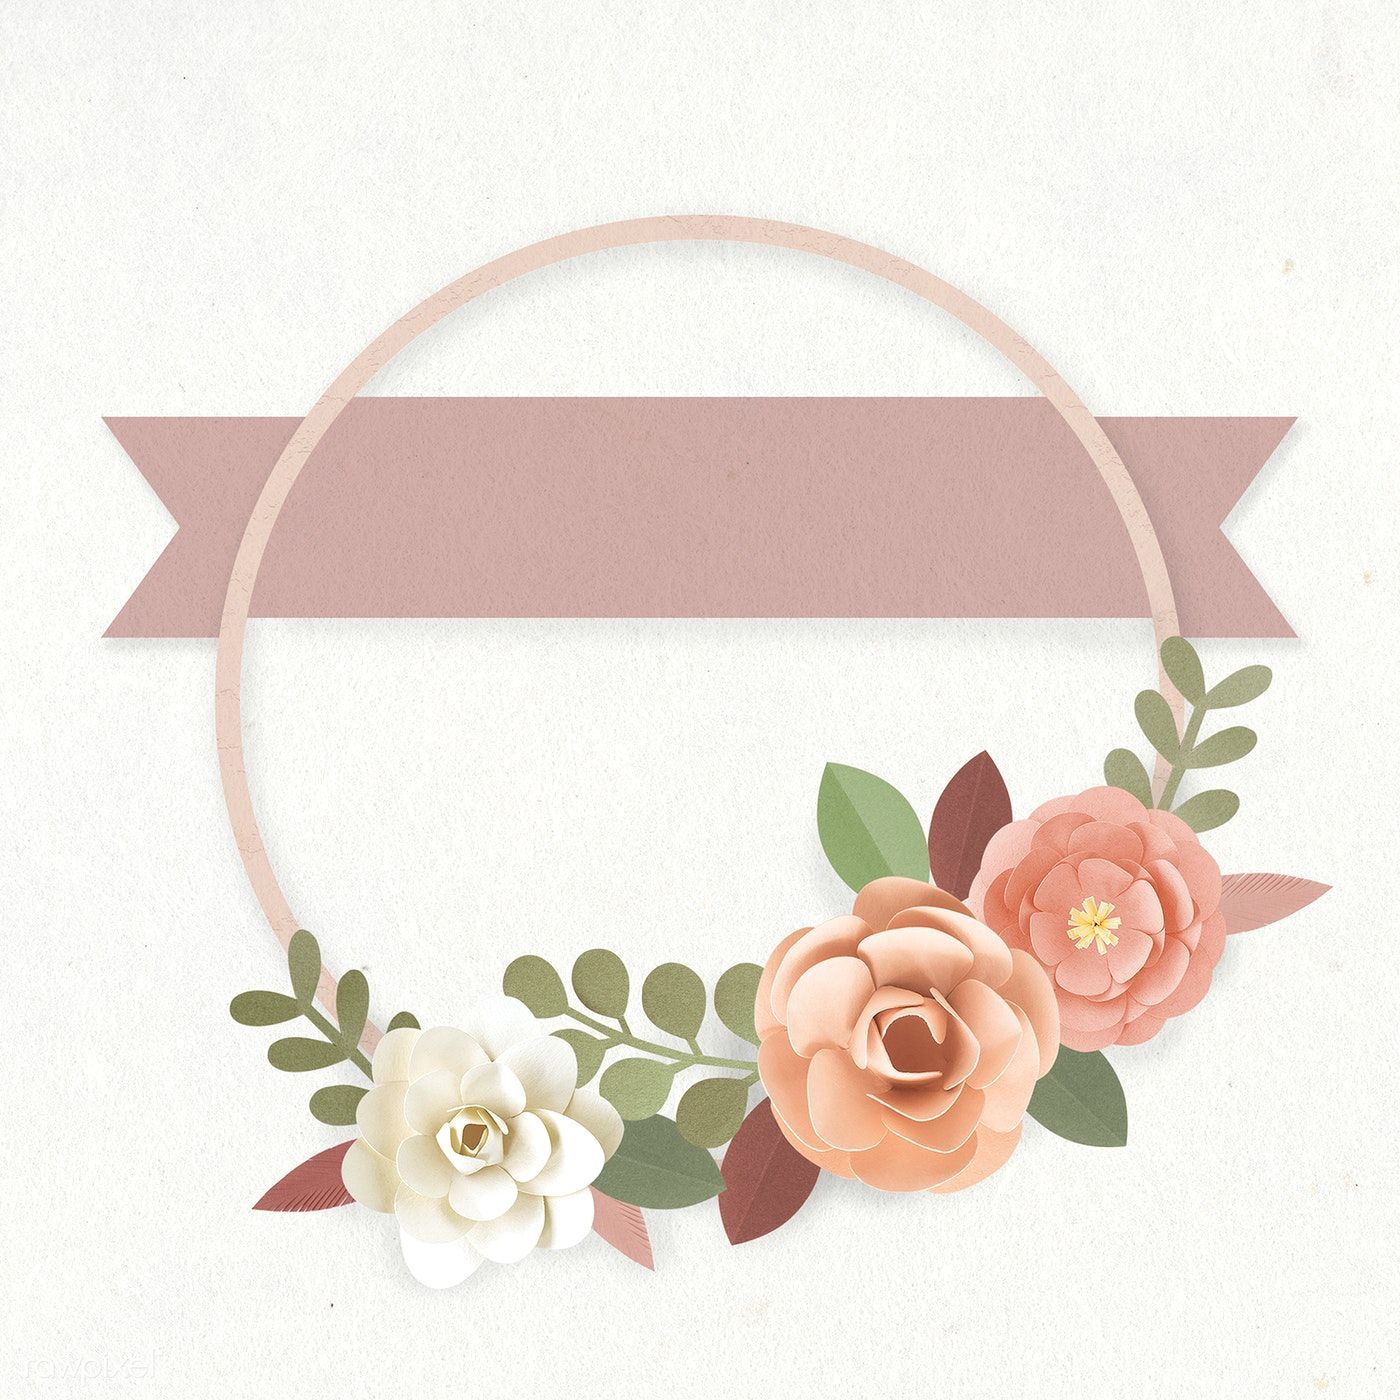 Download premium illustration of Round paper craft flower wreath